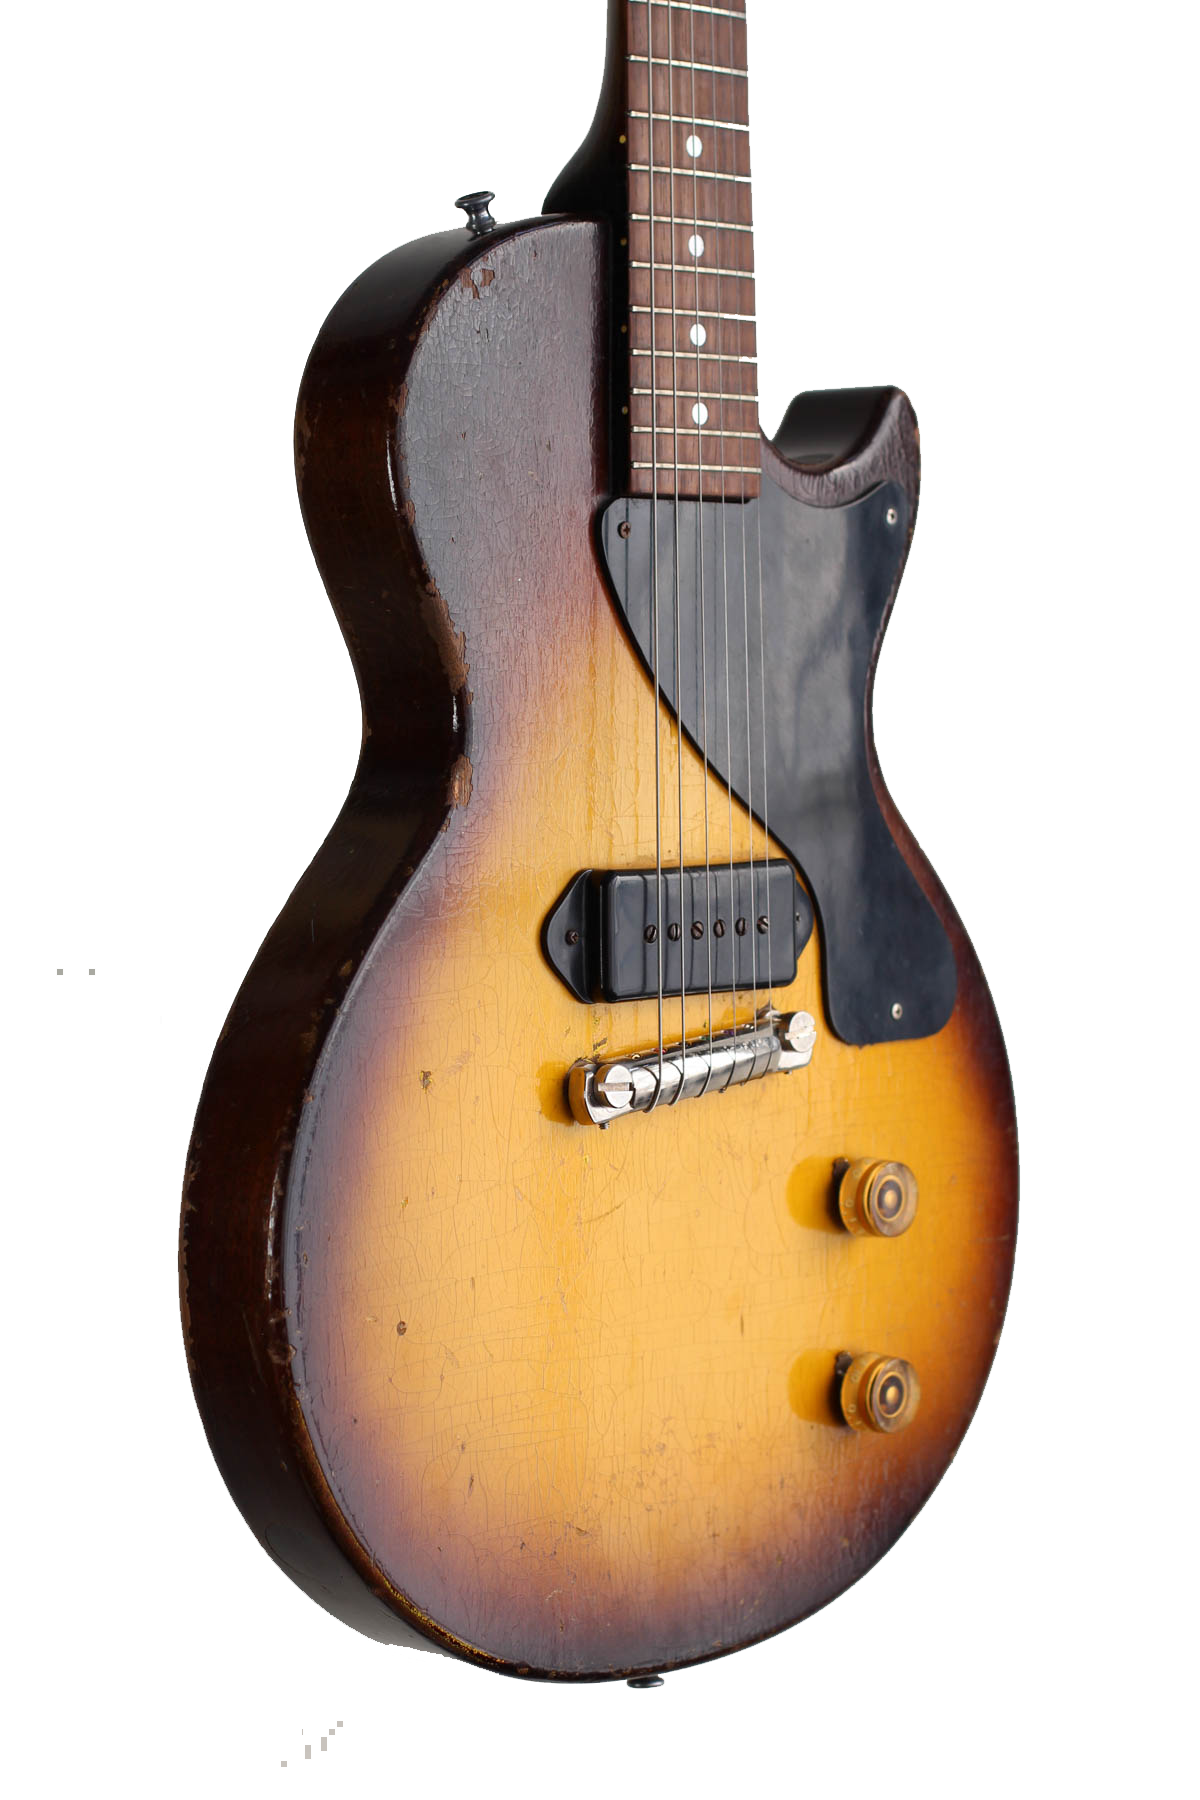 1955 Gibson Les Paul Jr. - Vintage Guitars